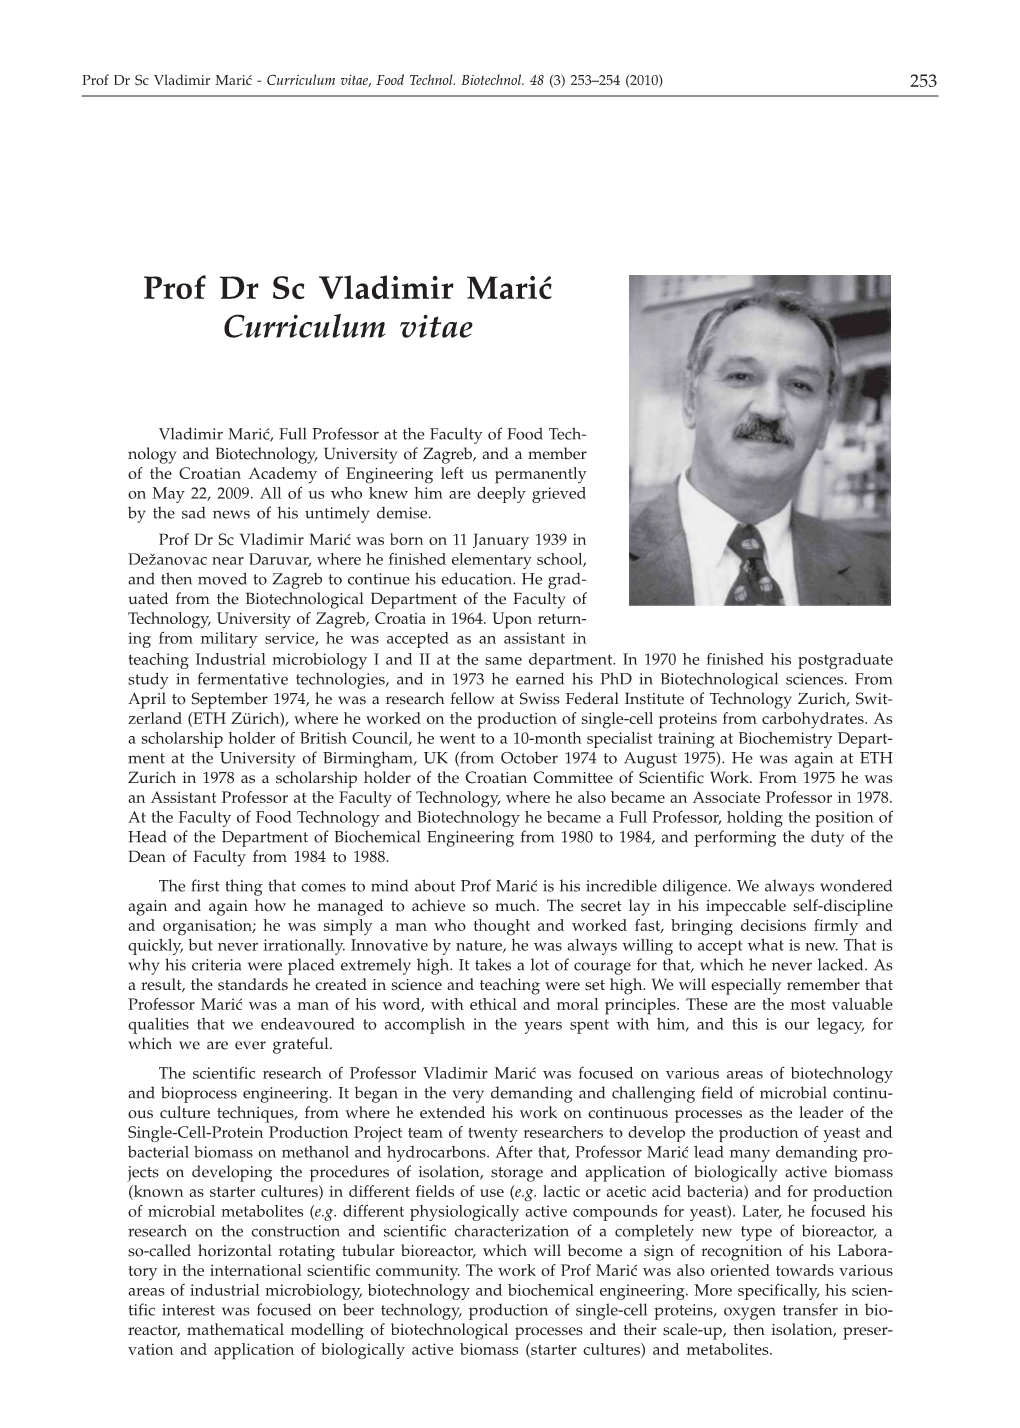 Prof Dr Sc Vladimir Mari} Curriculum Vitae